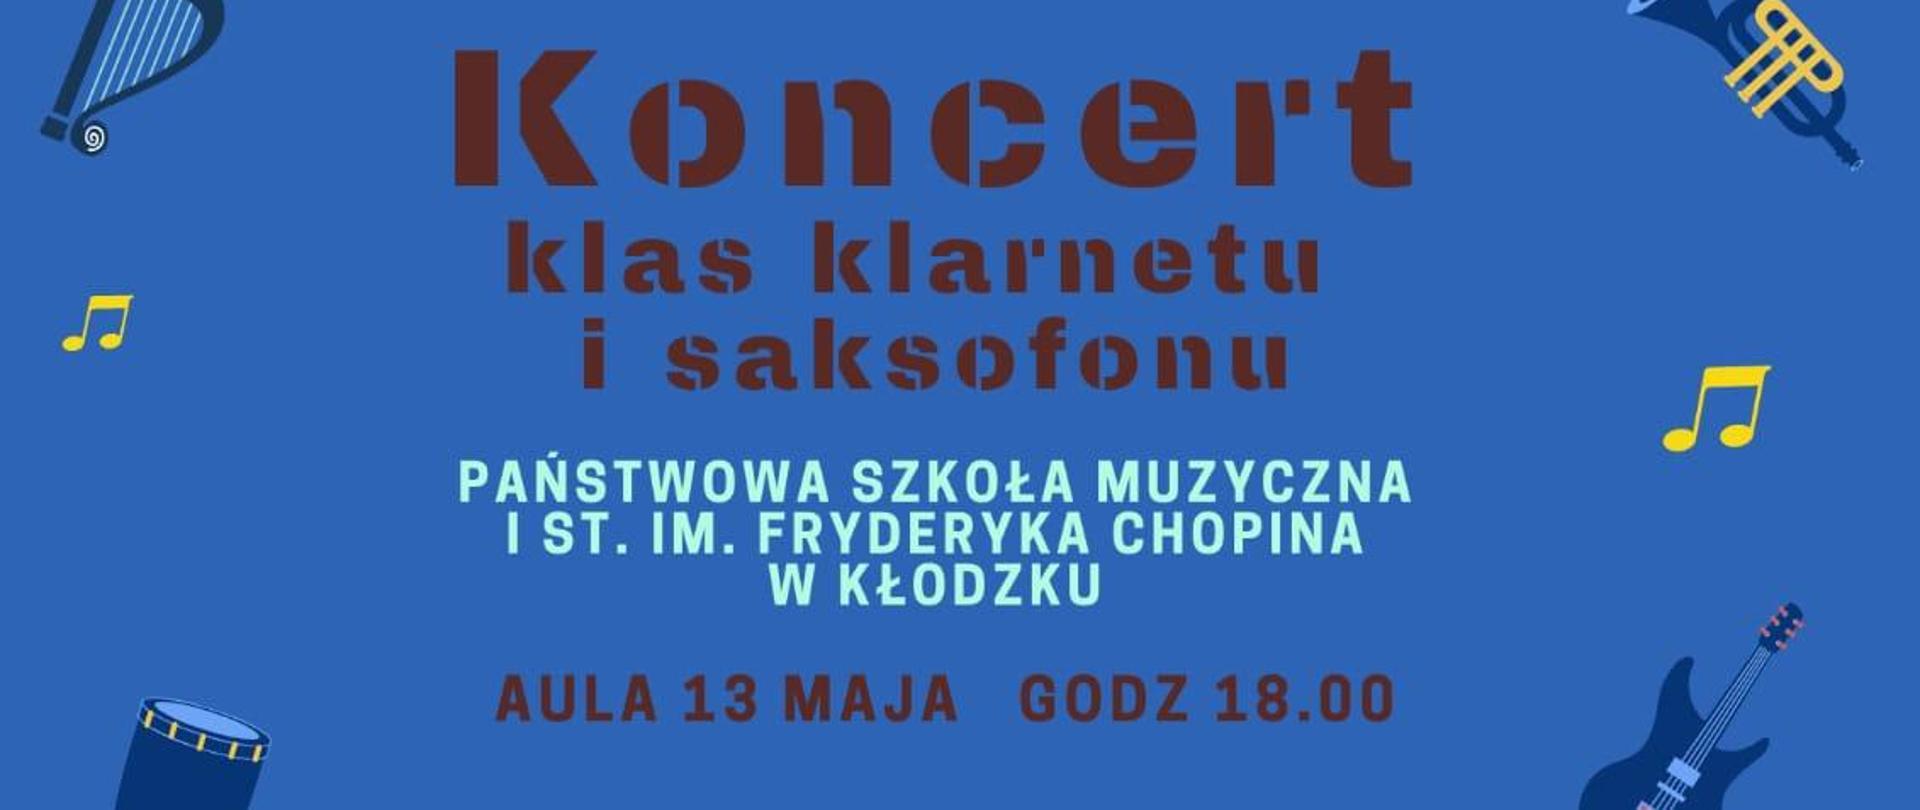 Plakat na niebieskim tle z informacją dotyczącą koncertu uczniów klas klarnetu P. Polaka i saksofonu P. K. Brzeskiej-Krawczyk - 13 maja 2024